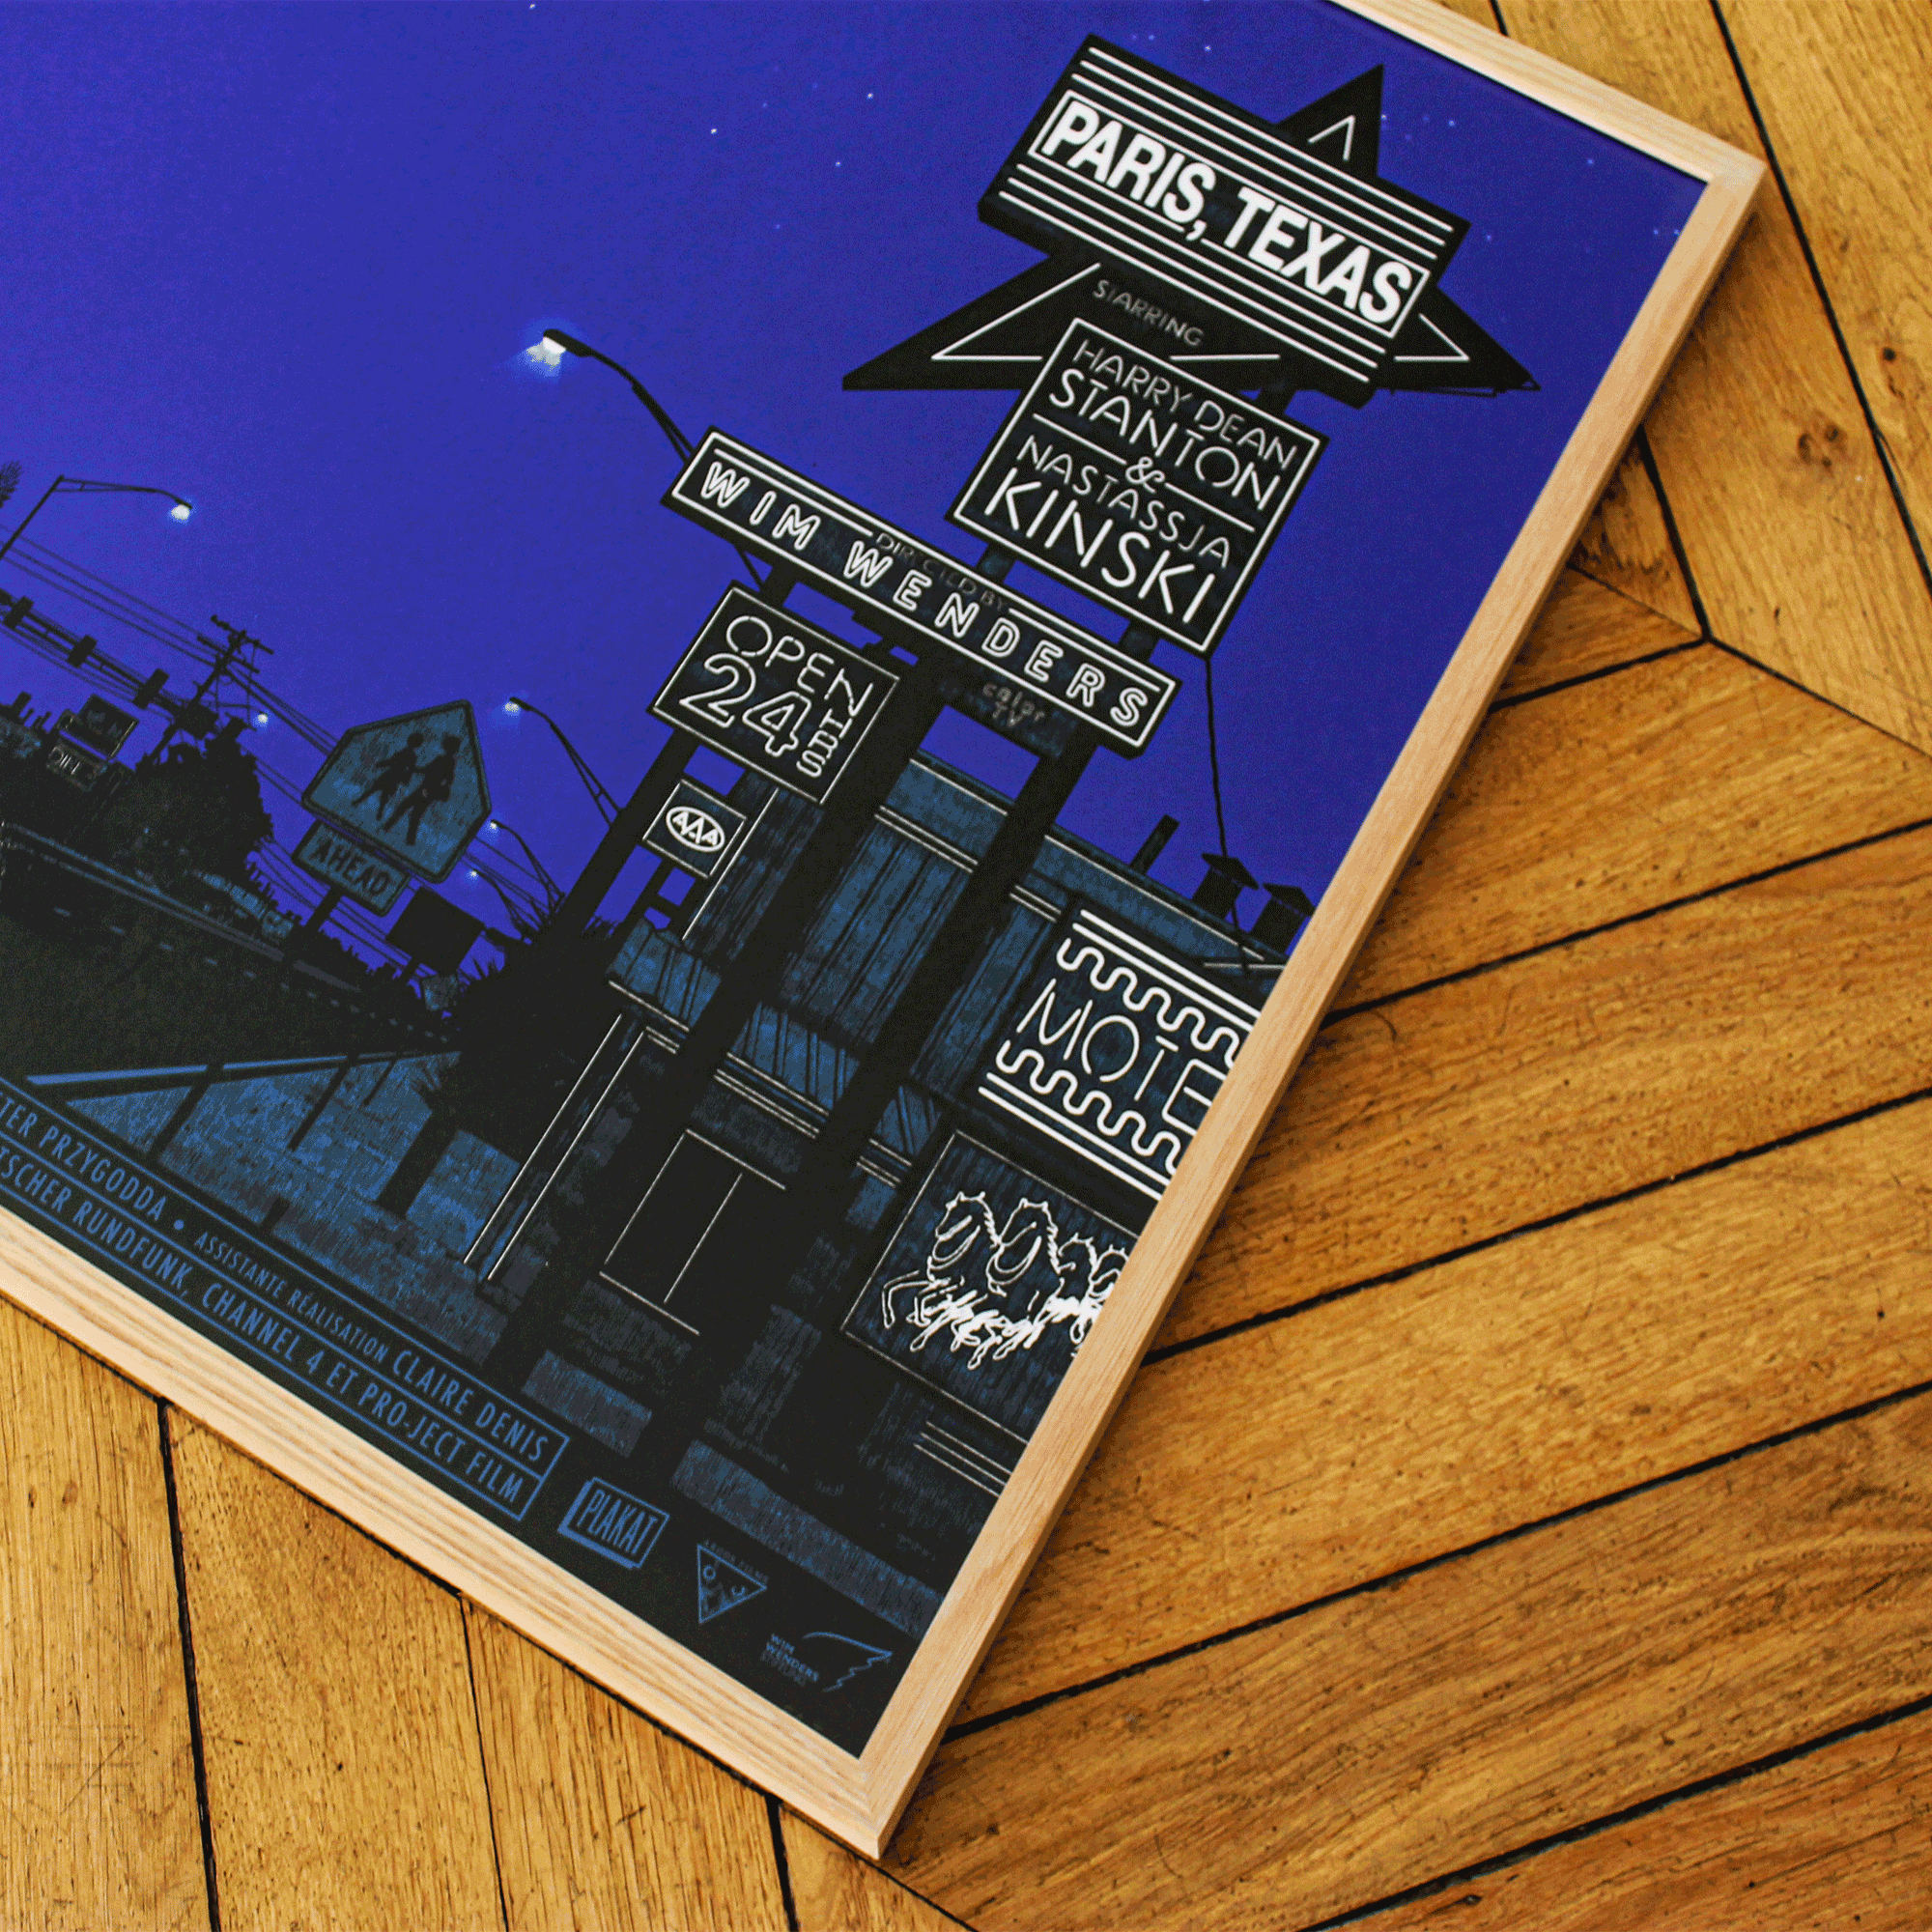 Plakat - maison d'edition d'affiche en serigraphie - affiche de cinema paris Texas magic night réalisée par dan McCarthy - imprimée en edition limitée numérotée main